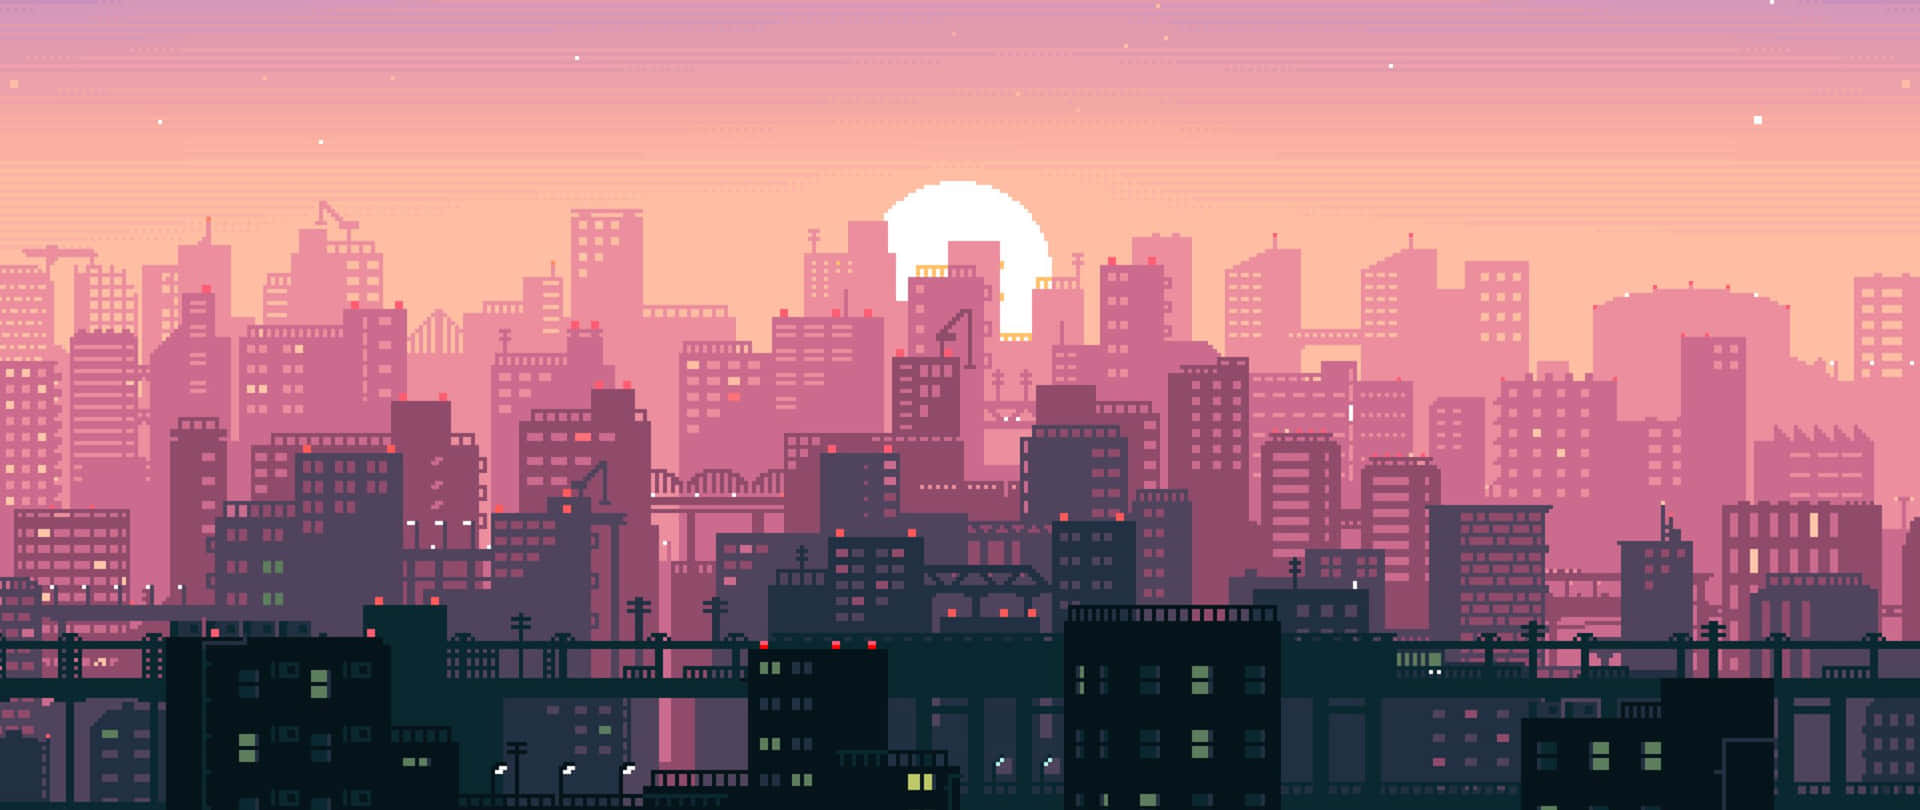 City Sunset Pixel Art 2560x1080 Wallpaper